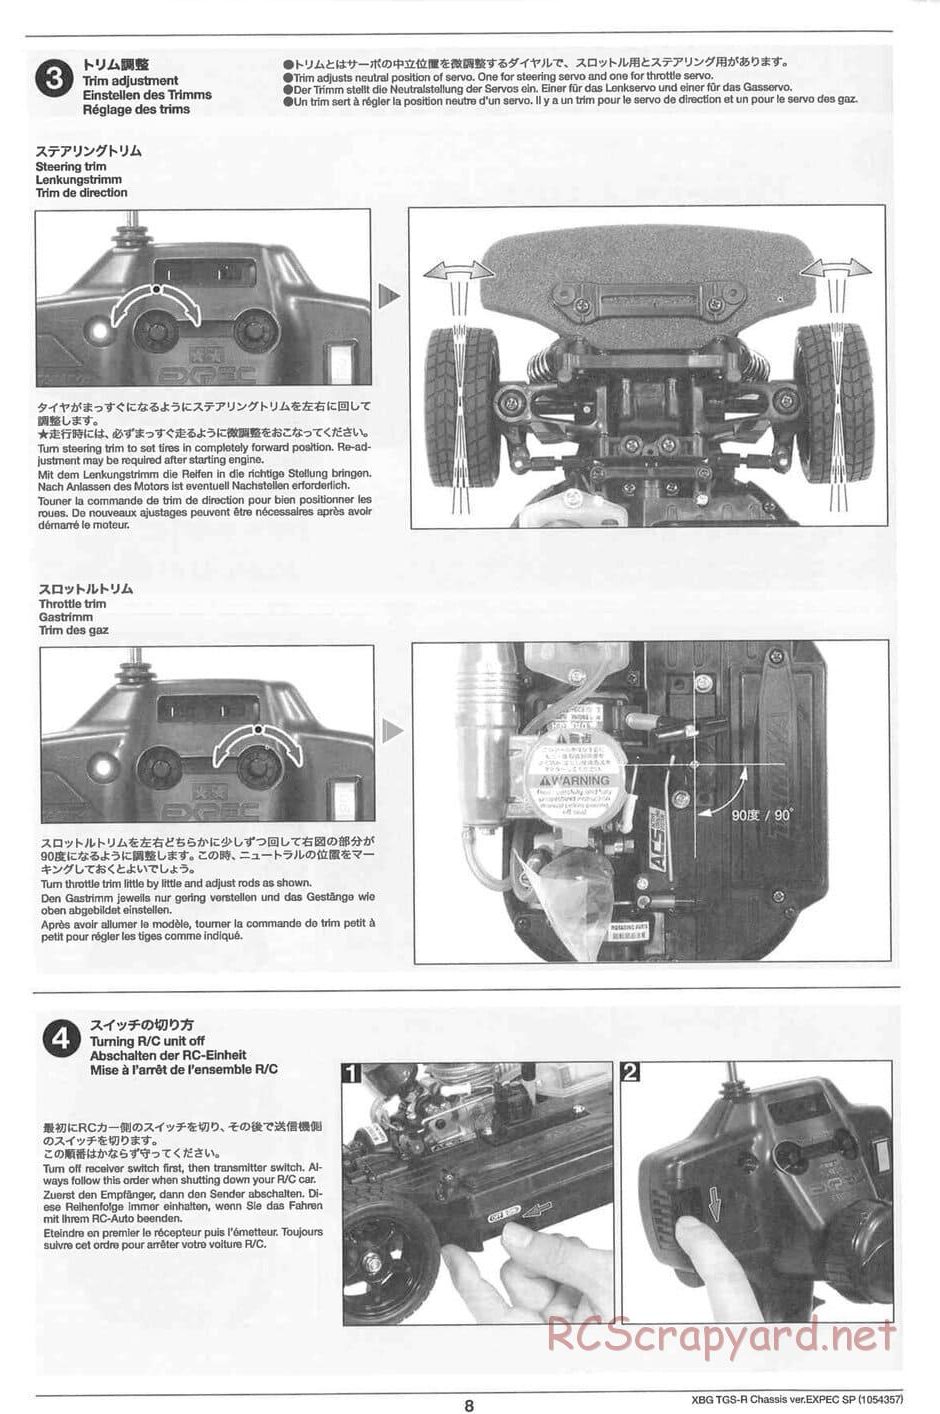 Tamiya - TGS-R Chassis - Manual - Page 8